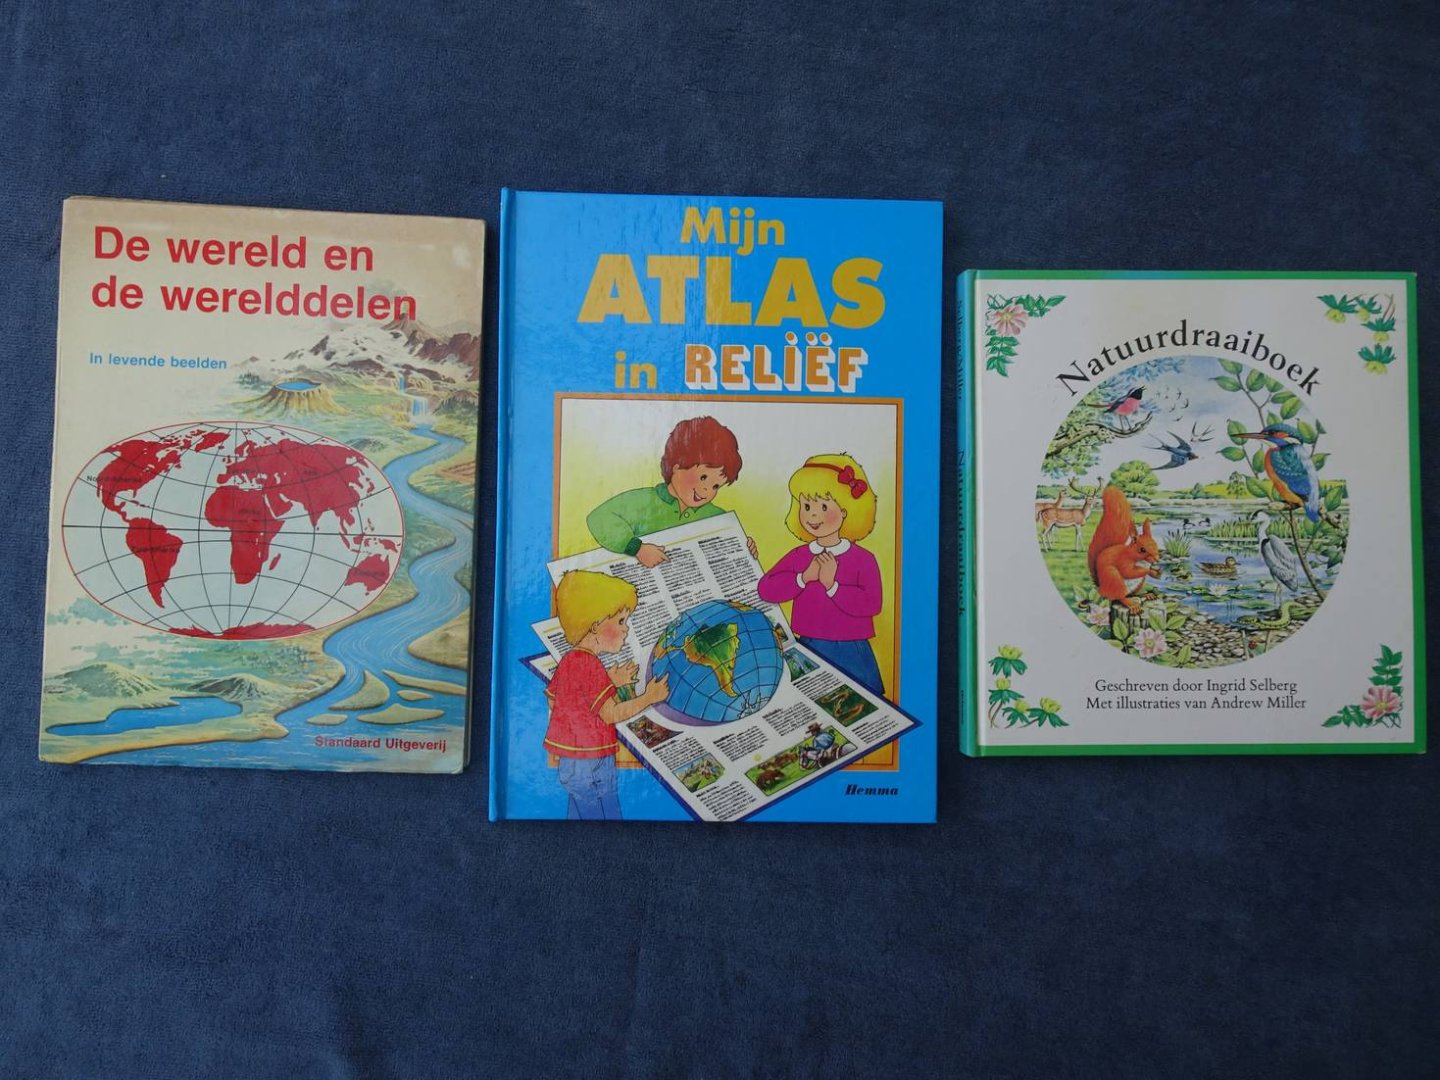 Selberg, Ingrid, Andrew Miller, et al. - Natuurdraaiboek/ Mijn atlas in reliëf/ De wereld en de werelddelen in levende beelden. 3 delen